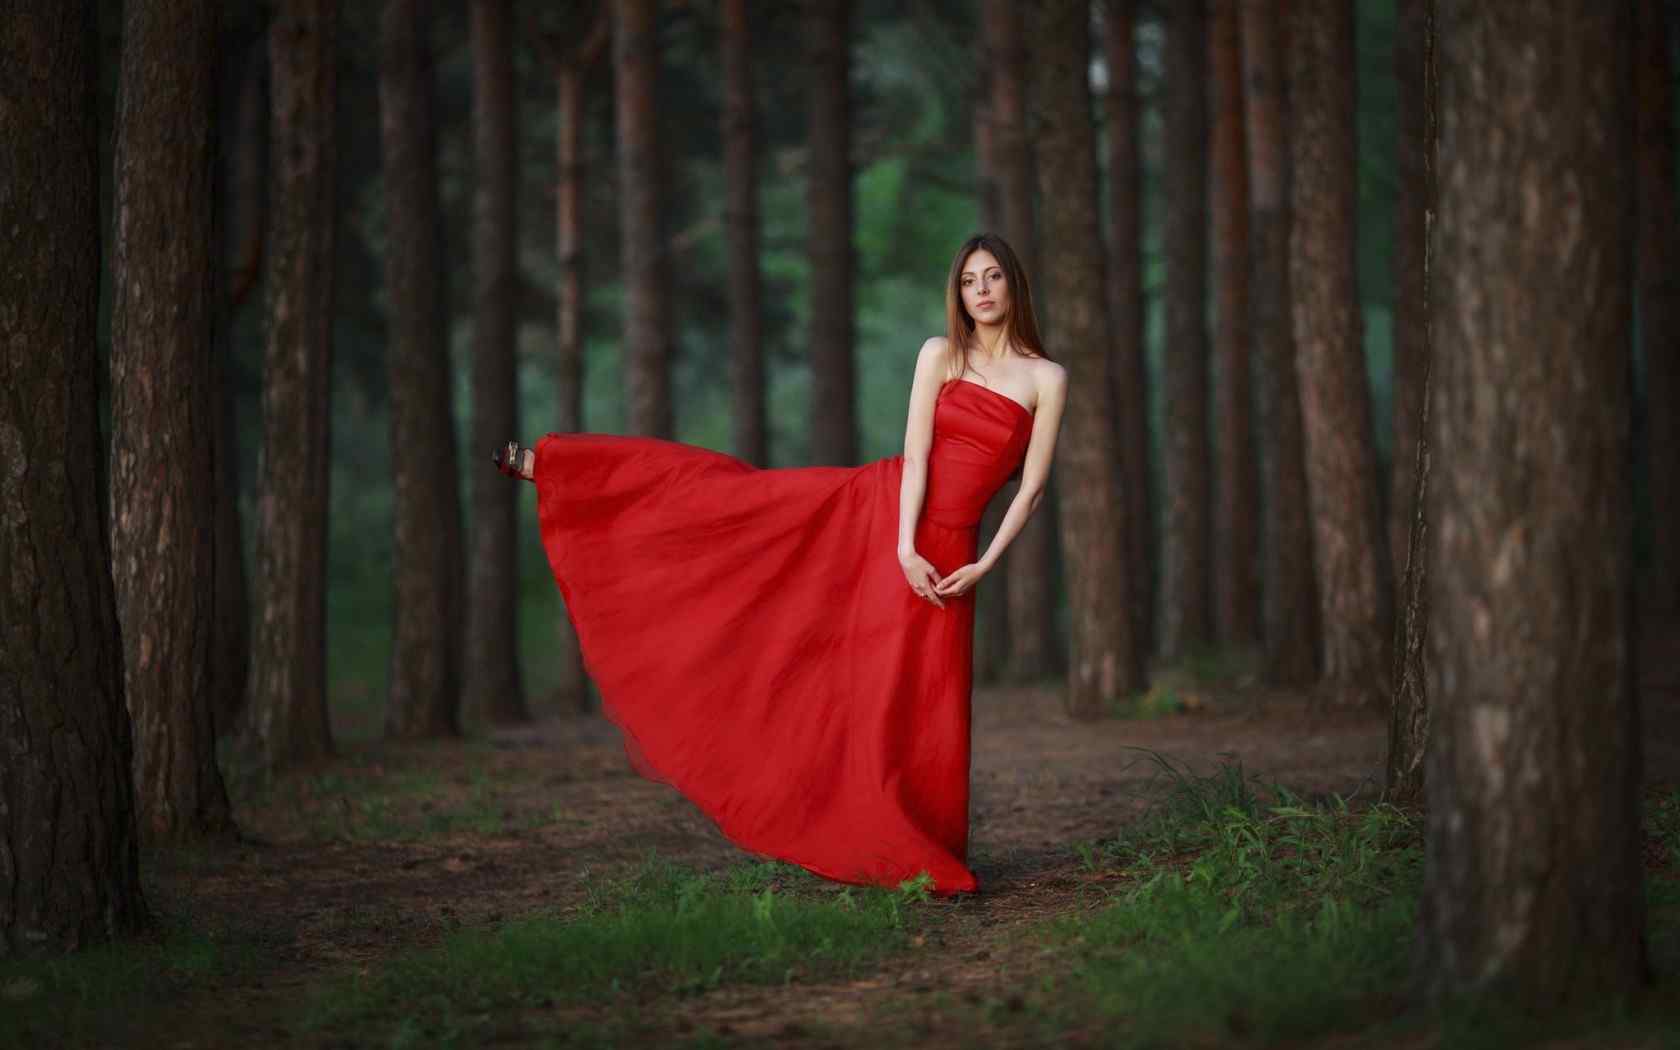 女孩 赤脚 红色裙子 背影 道路风景 唯美 壁纸壁纸(小清新静态壁纸) - 静态壁纸下载 - 元气壁纸